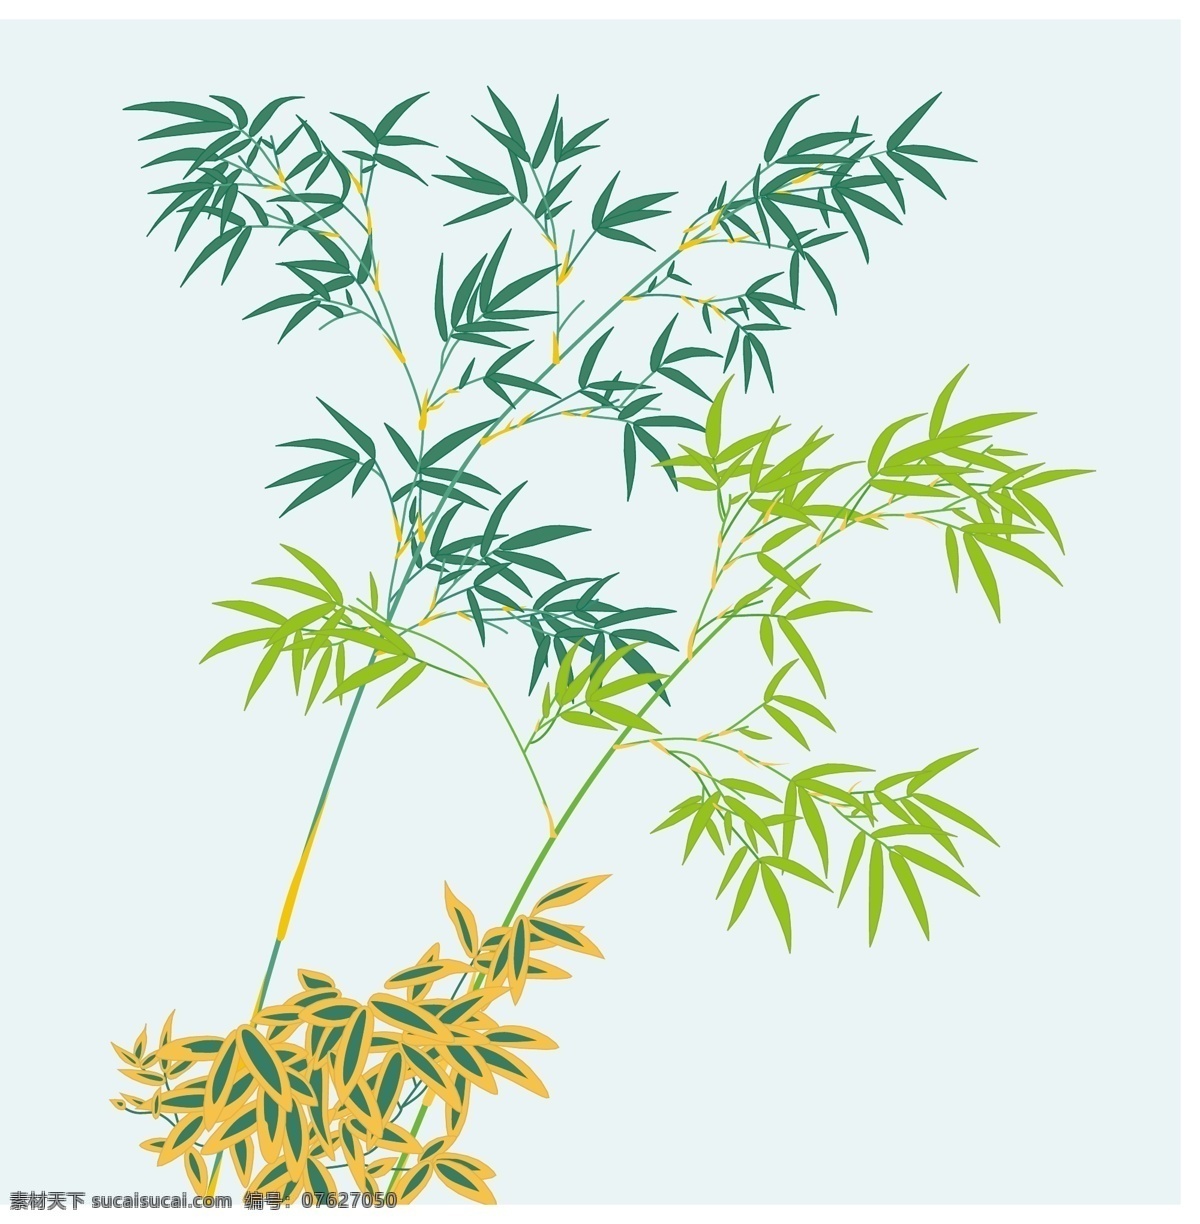 日本 传统 花卉 植物 图案 矢量 精美素材 特色素材 底纹边框 花纹花边 精致 典藏 花纹 系列 矢量图库 駏 絕 盗 蝂